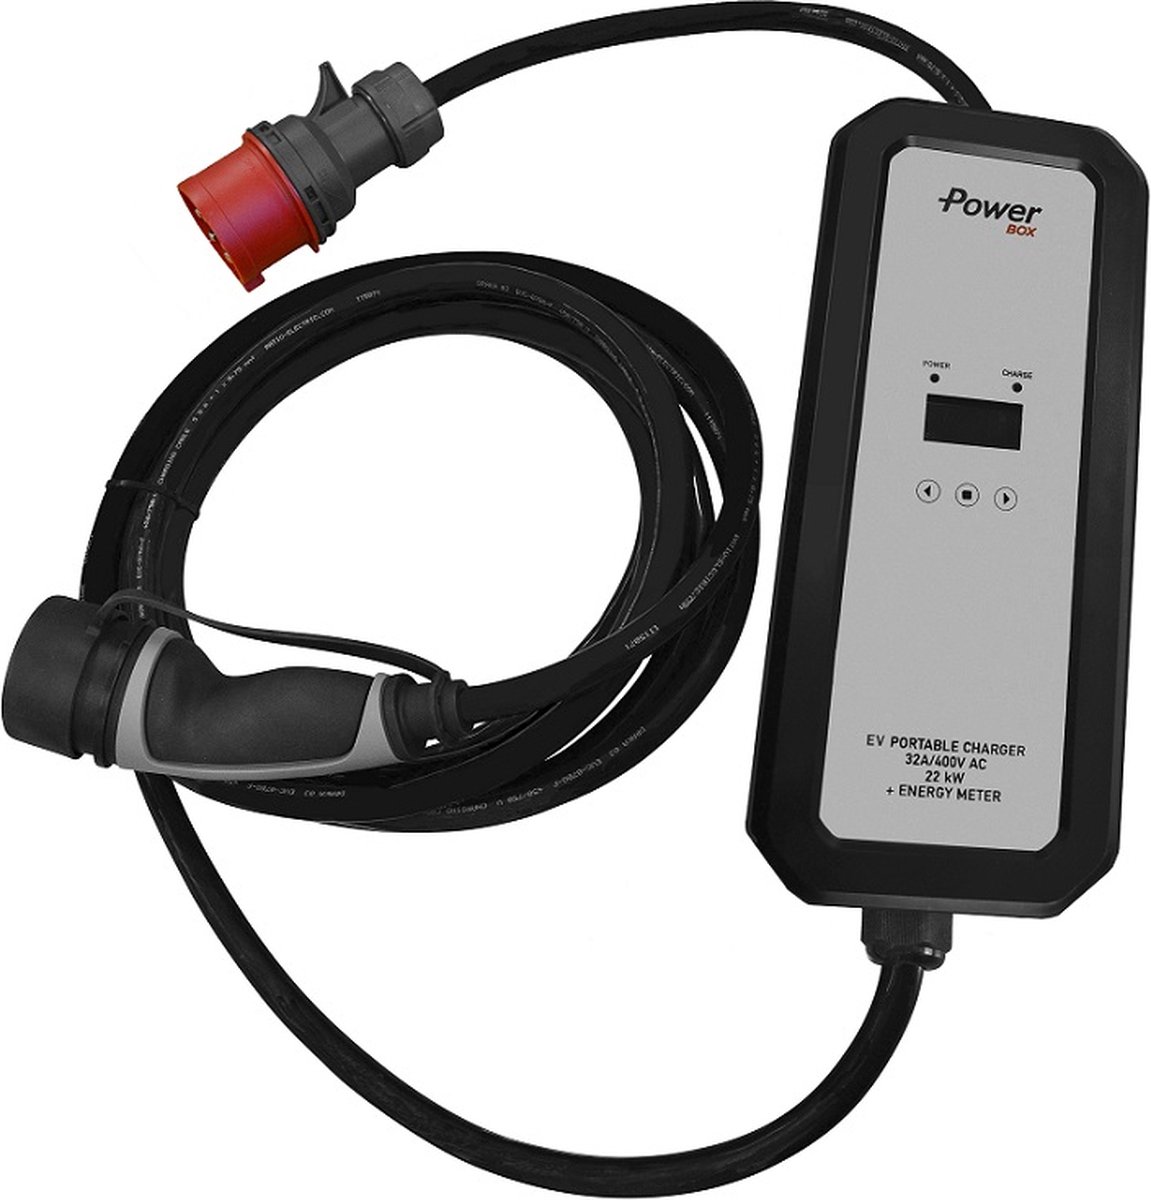 Chargeur Voiture Électrique Hybride Domestique Recharge Cable Portable 11kW  16A